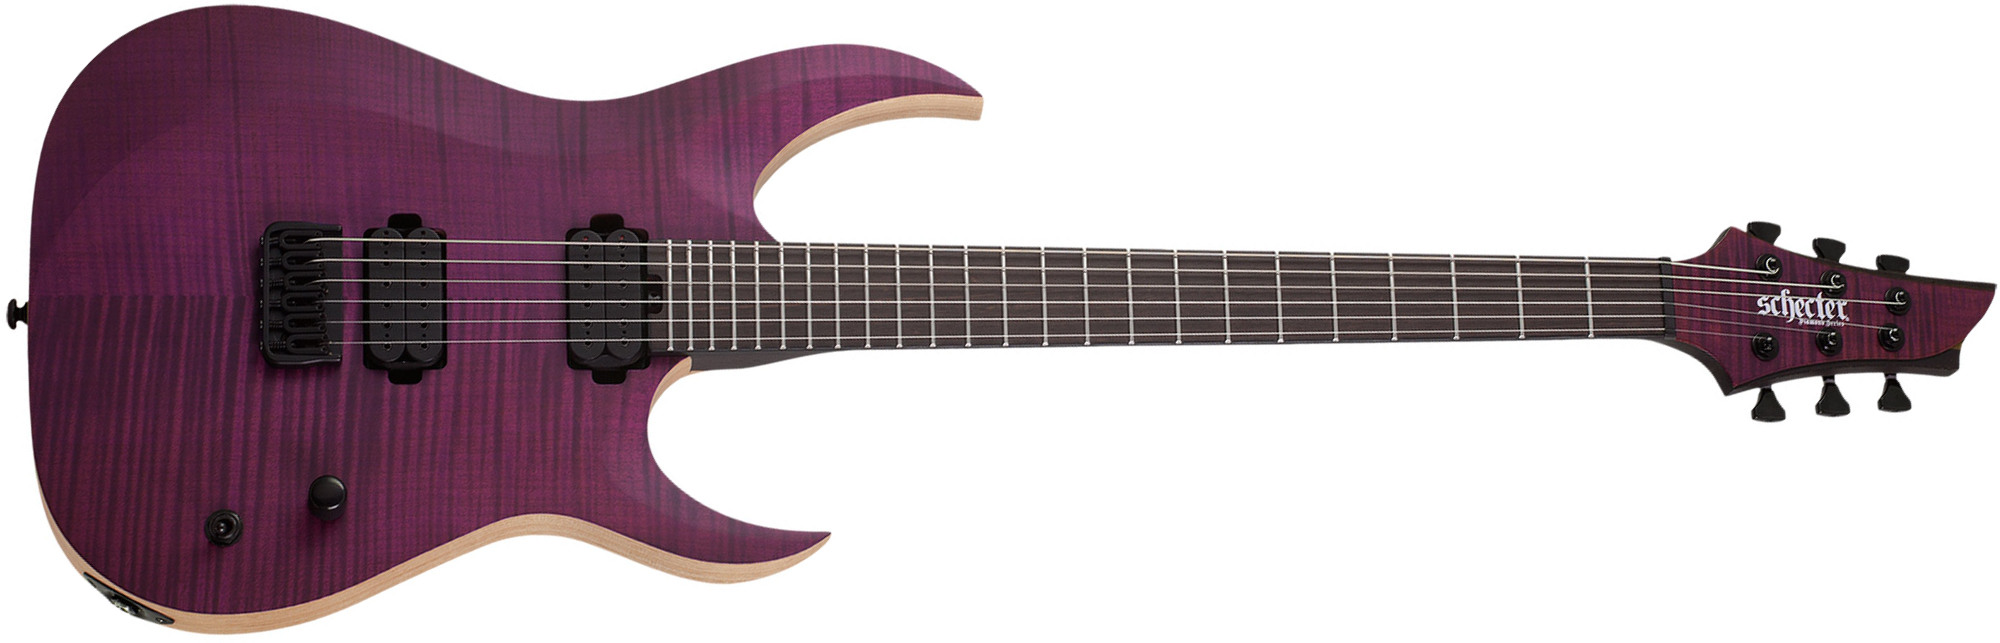 Schecter John Browne Tao-6 Signature 2h Ht Eb - Satin Trans Purple - E-Gitarre in Str-Form - Main picture